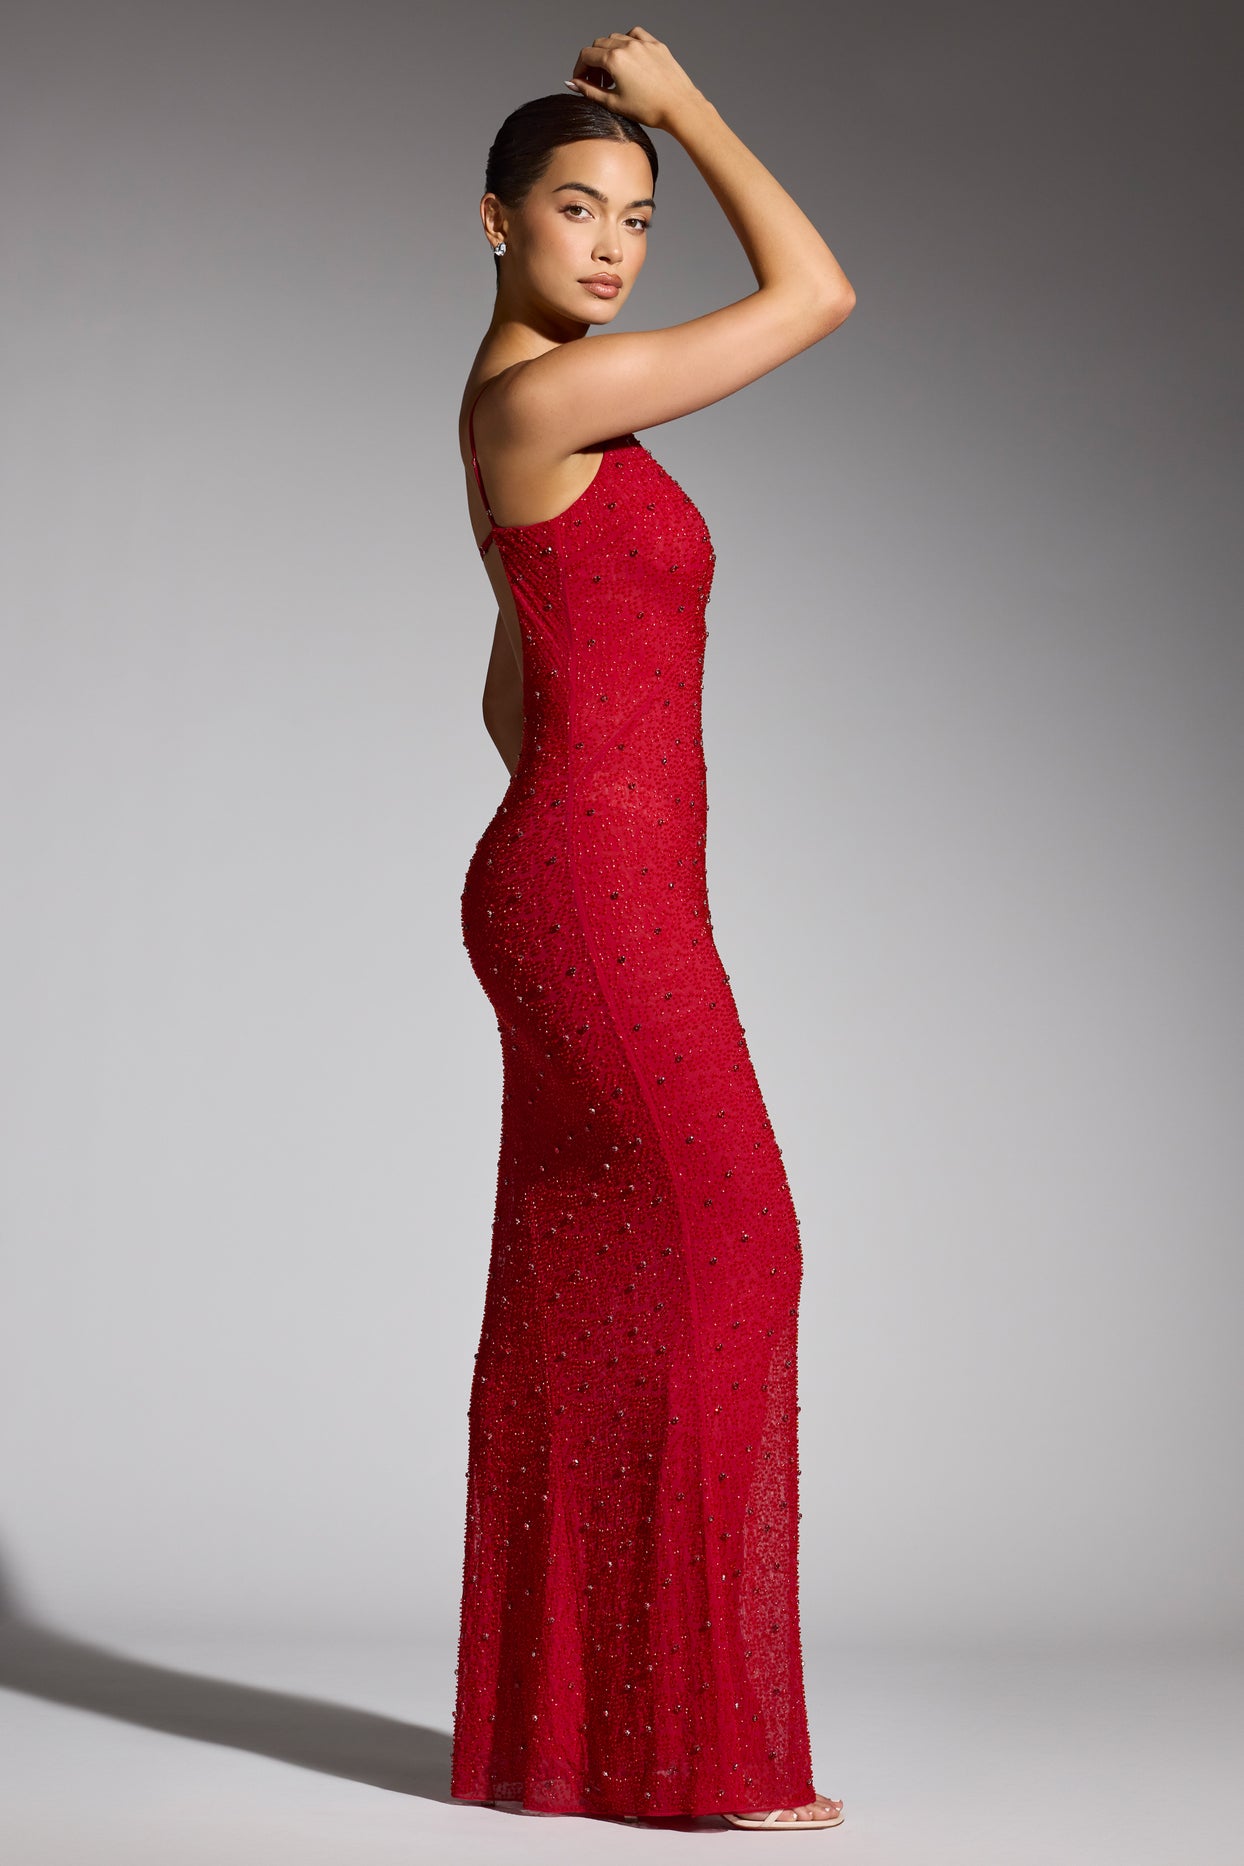 Ozdobiona suknia wieczorowa z głębokim dekoltem w kolorze czerwonym